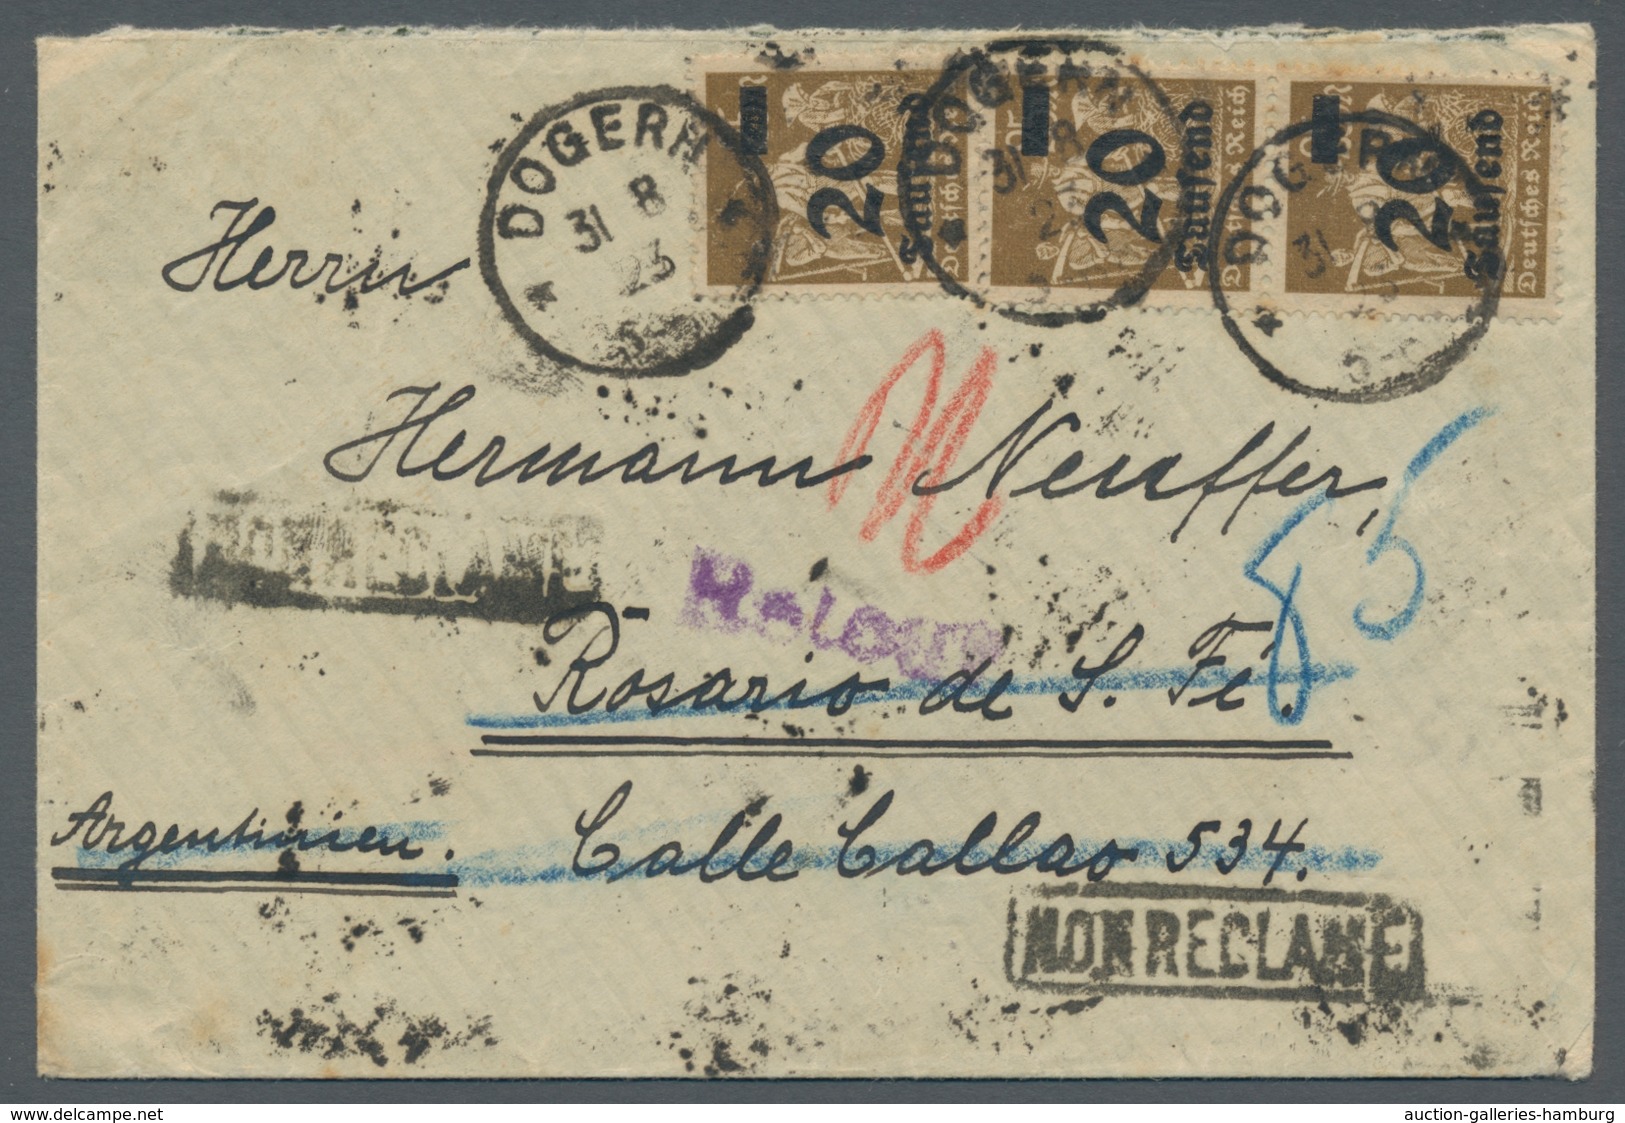 Deutsches Reich - Inflation: 1923, 20 Tsd. Auf 25 M Braun 3er Streifen Als Mef Auf Kleinem Überseebr - Used Stamps